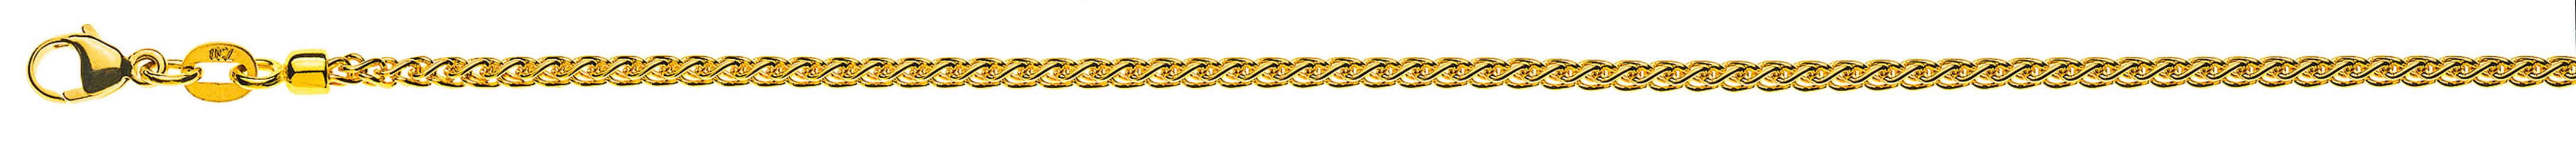 AURONOS Prestige Halskette Gelbgold 18K Zopfkette 42cm 2.15mm